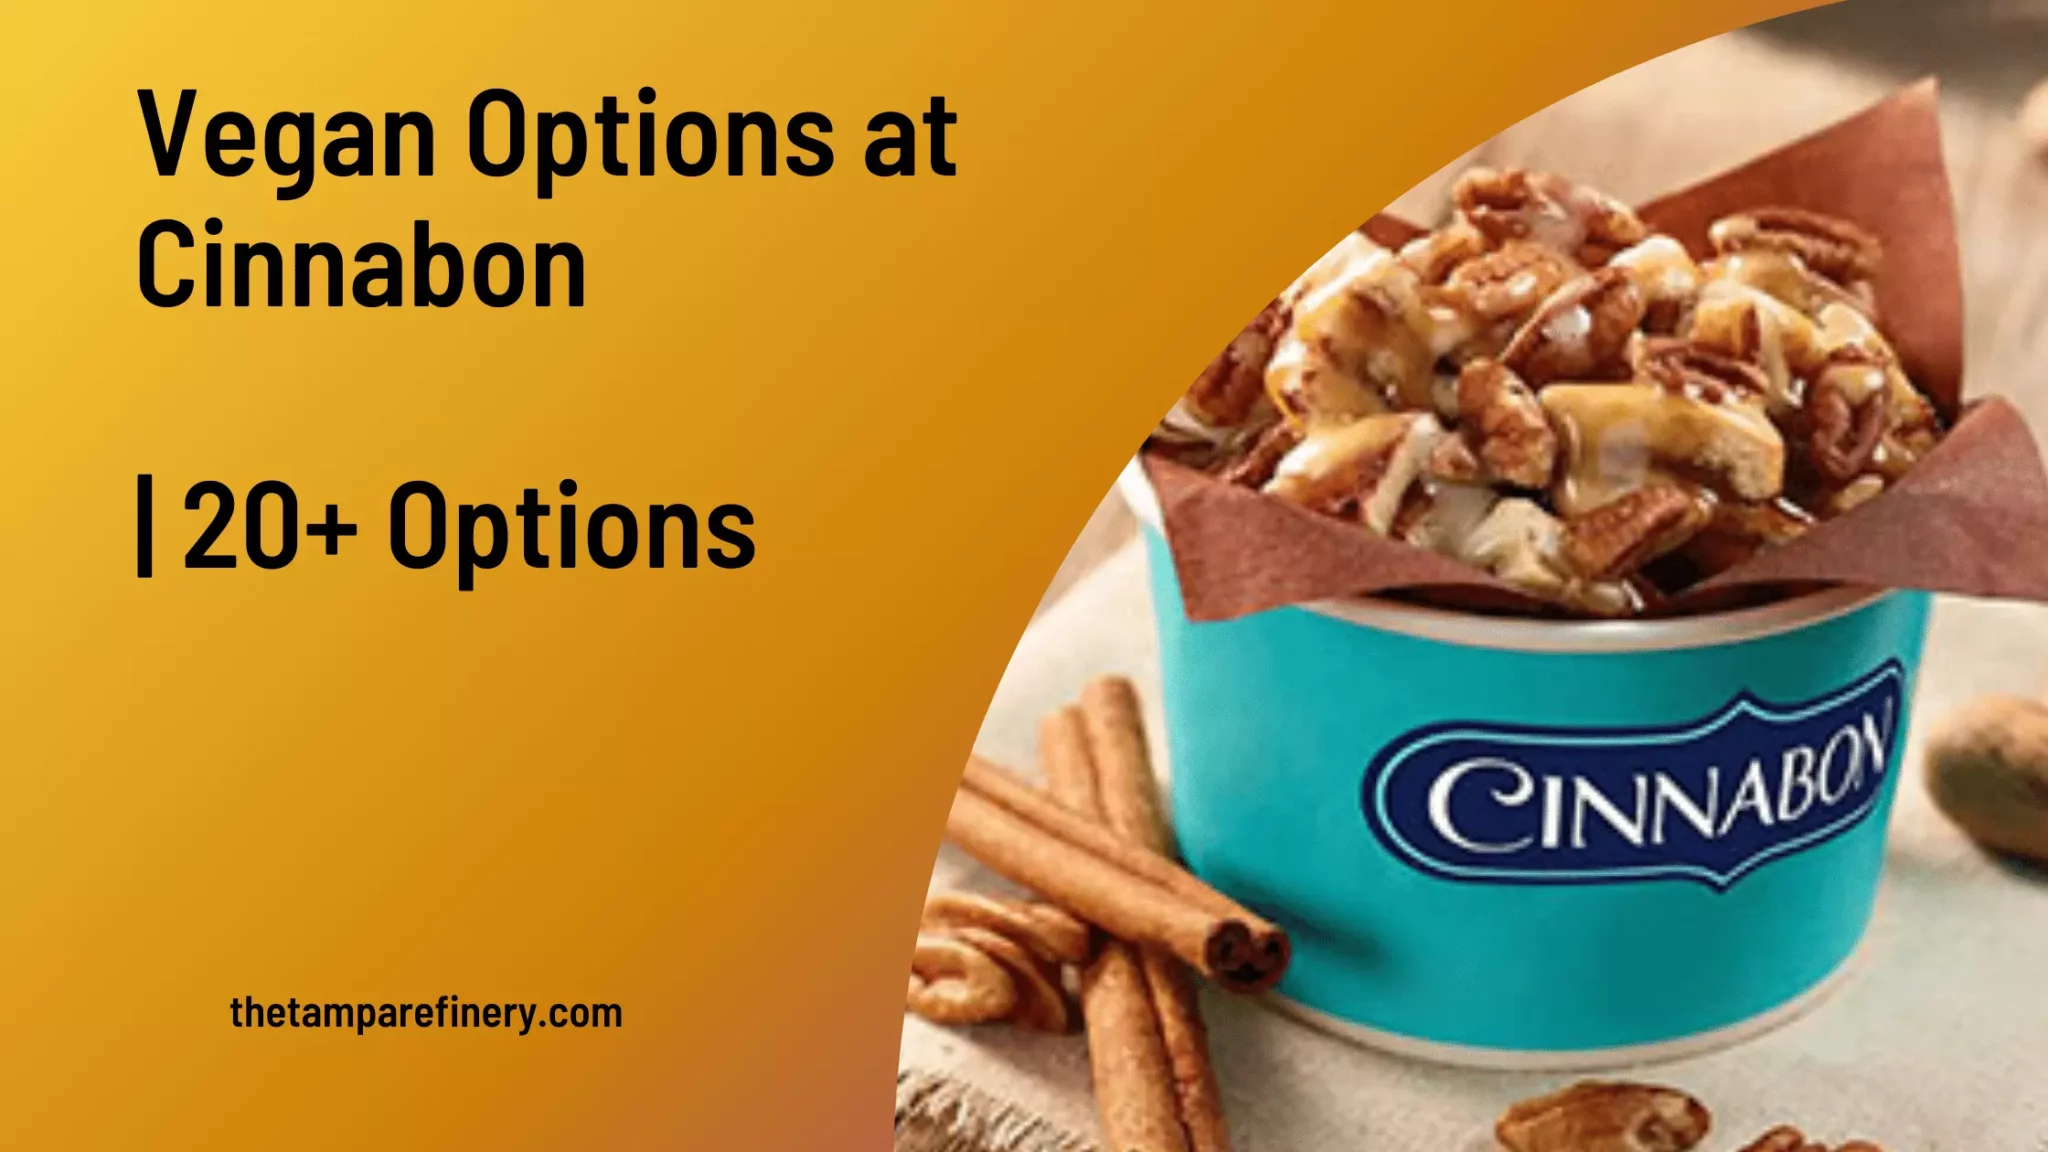 Vegan Options at Cinnabon